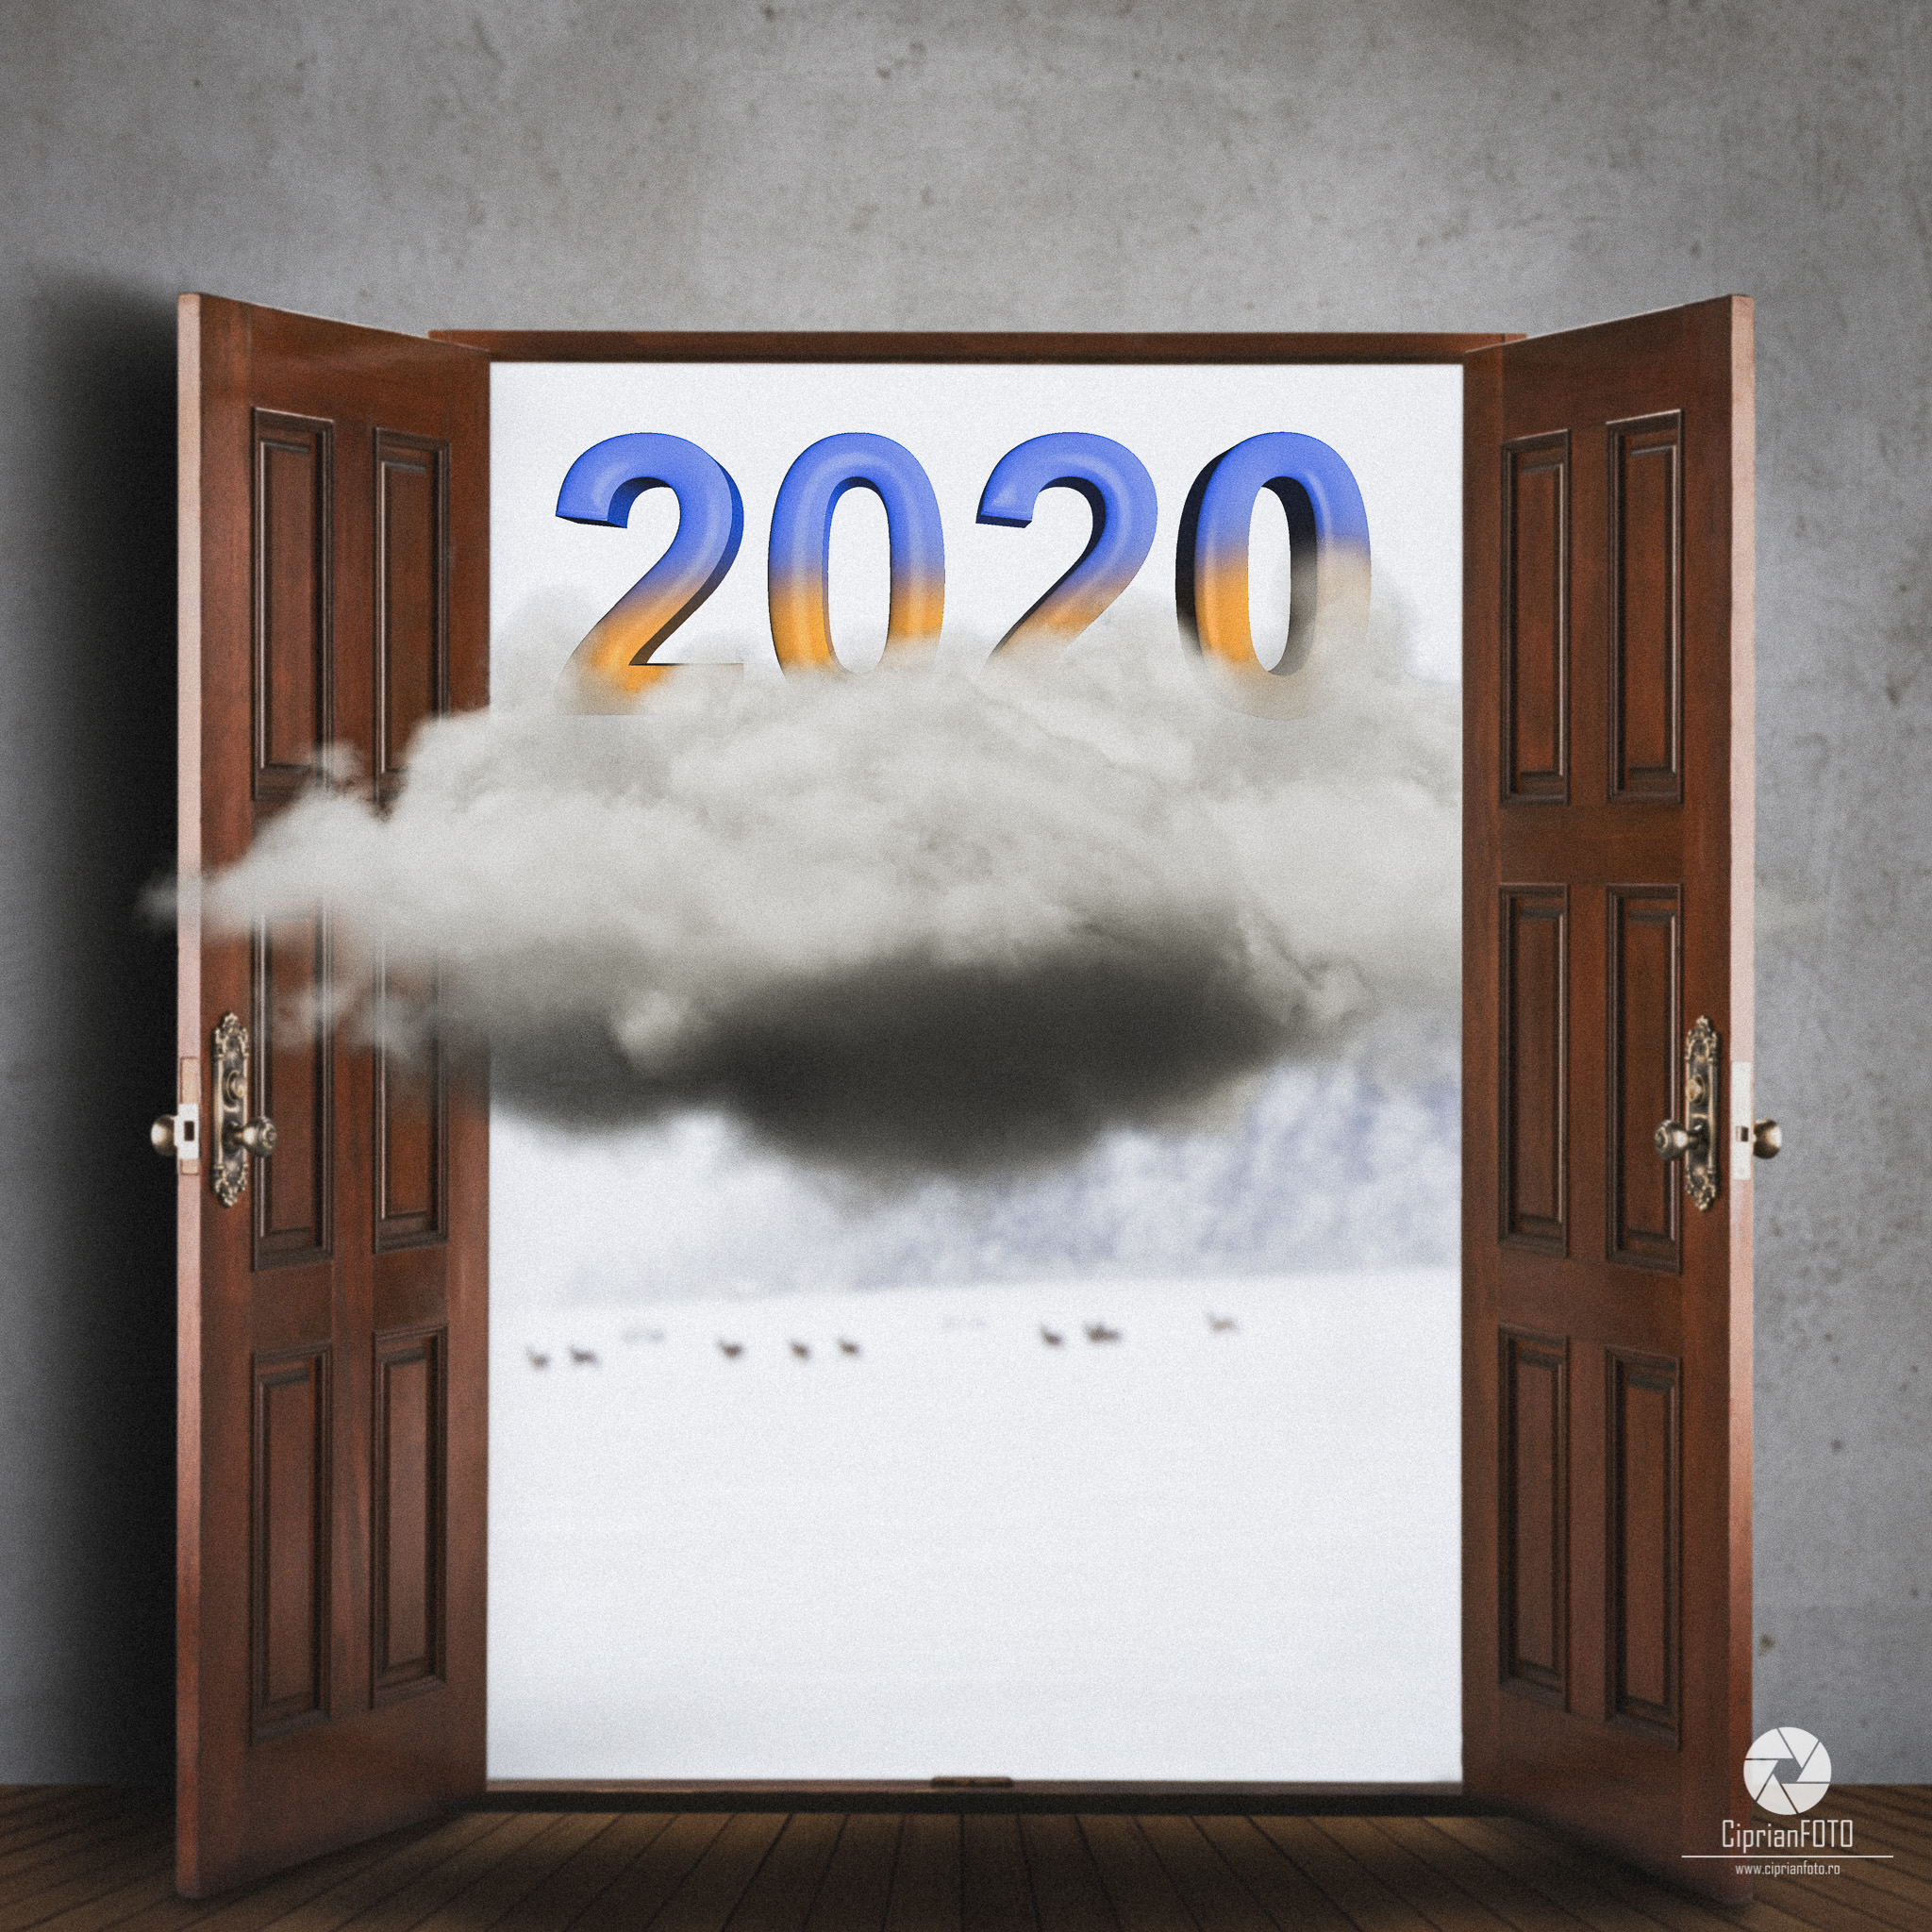 Happy New Year 2020, Photoshop Manipulation Tutorial, CiprianFOTO, 2020